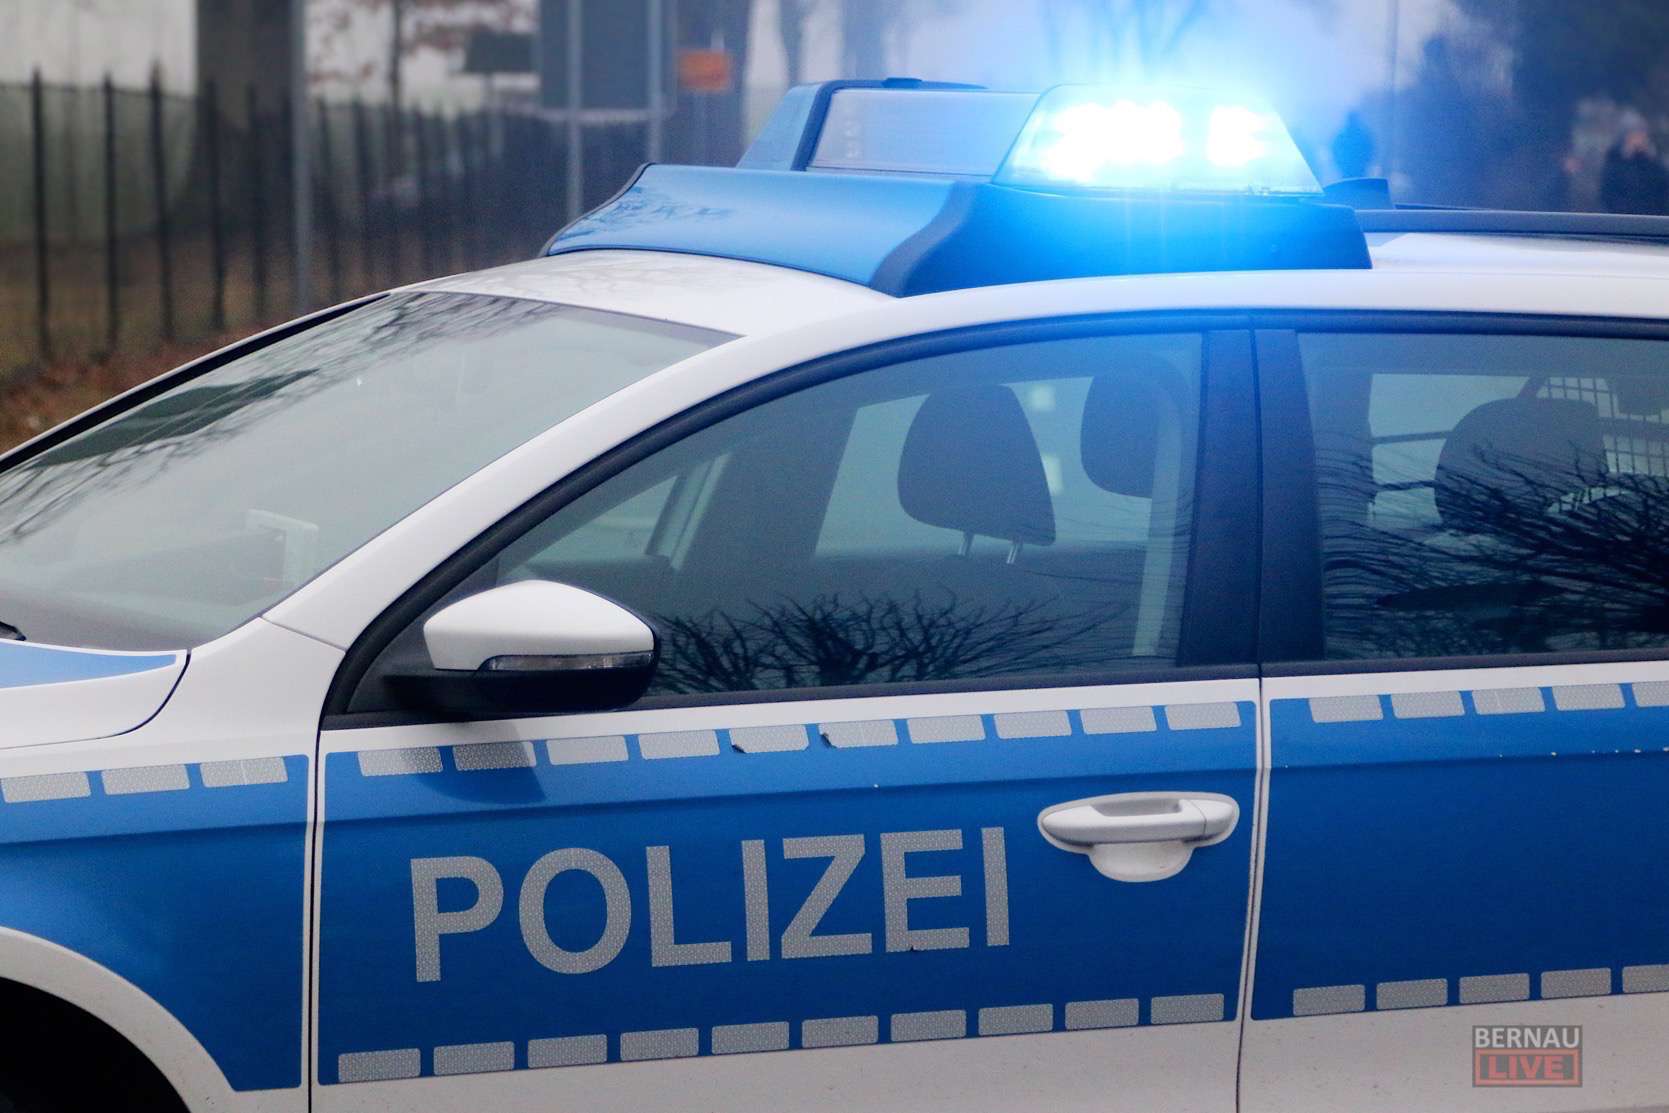 Versuchter Angriff auf Polizist in Lanke - nun in Gewahrsam